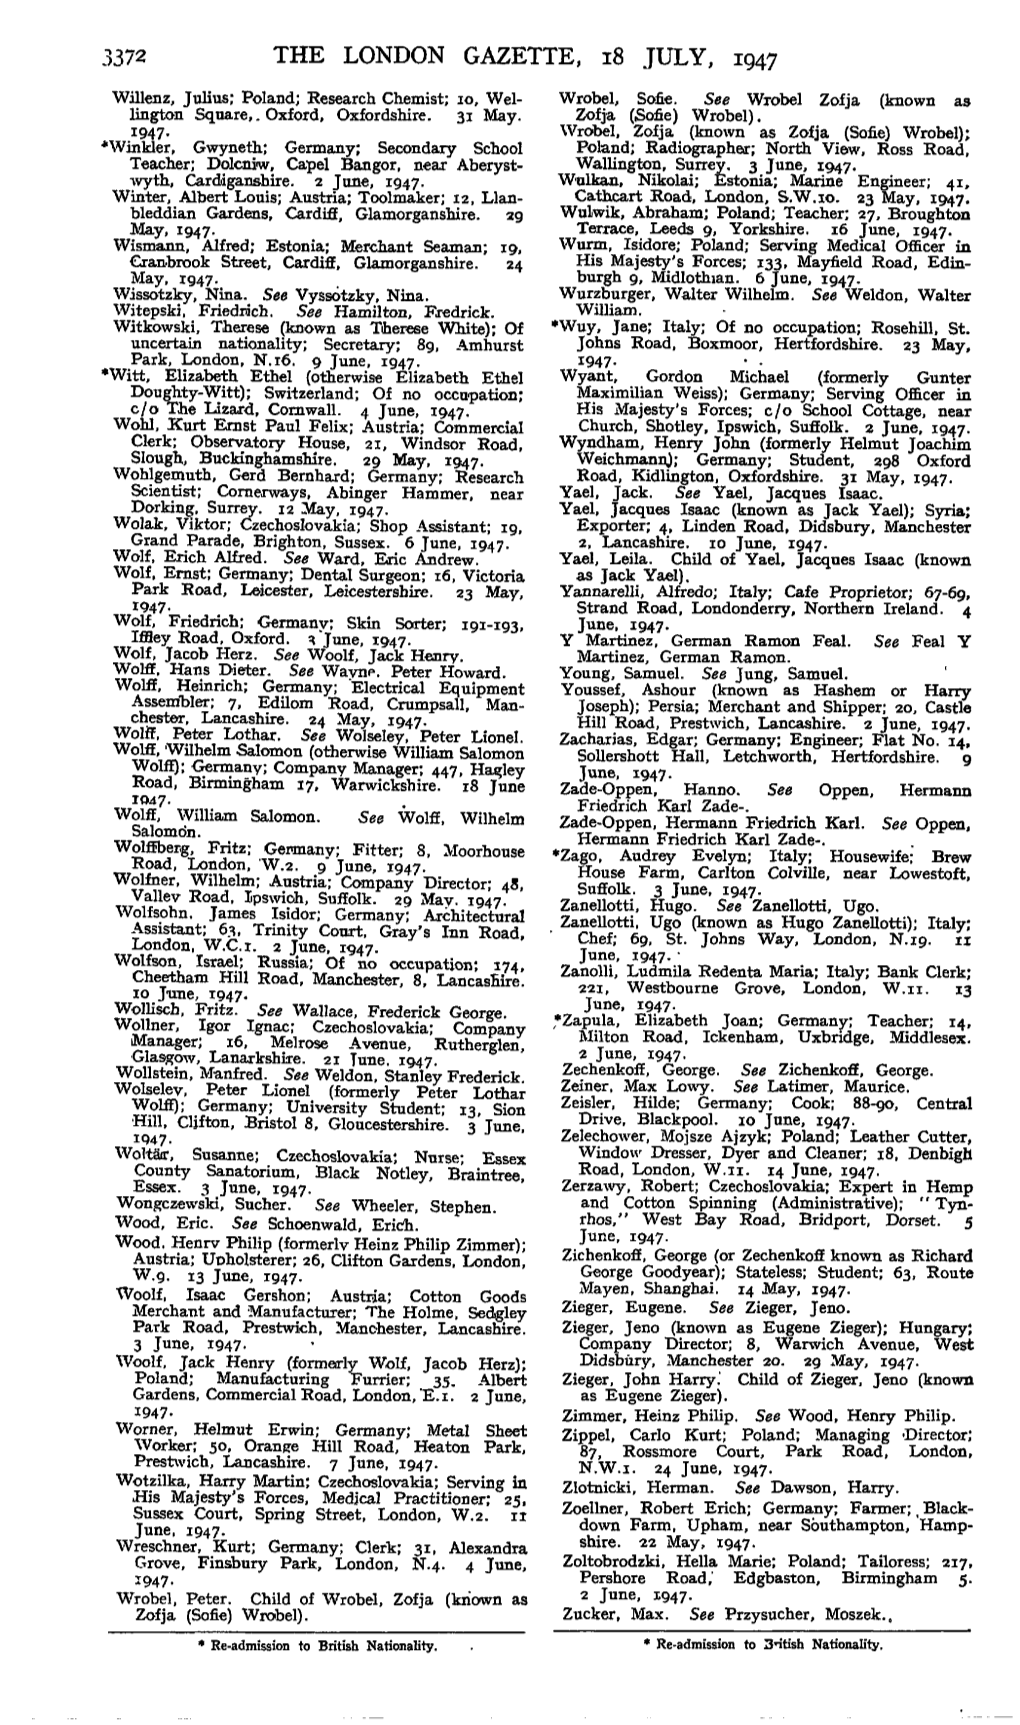 3372 the London Gazette, 18 July, 1947